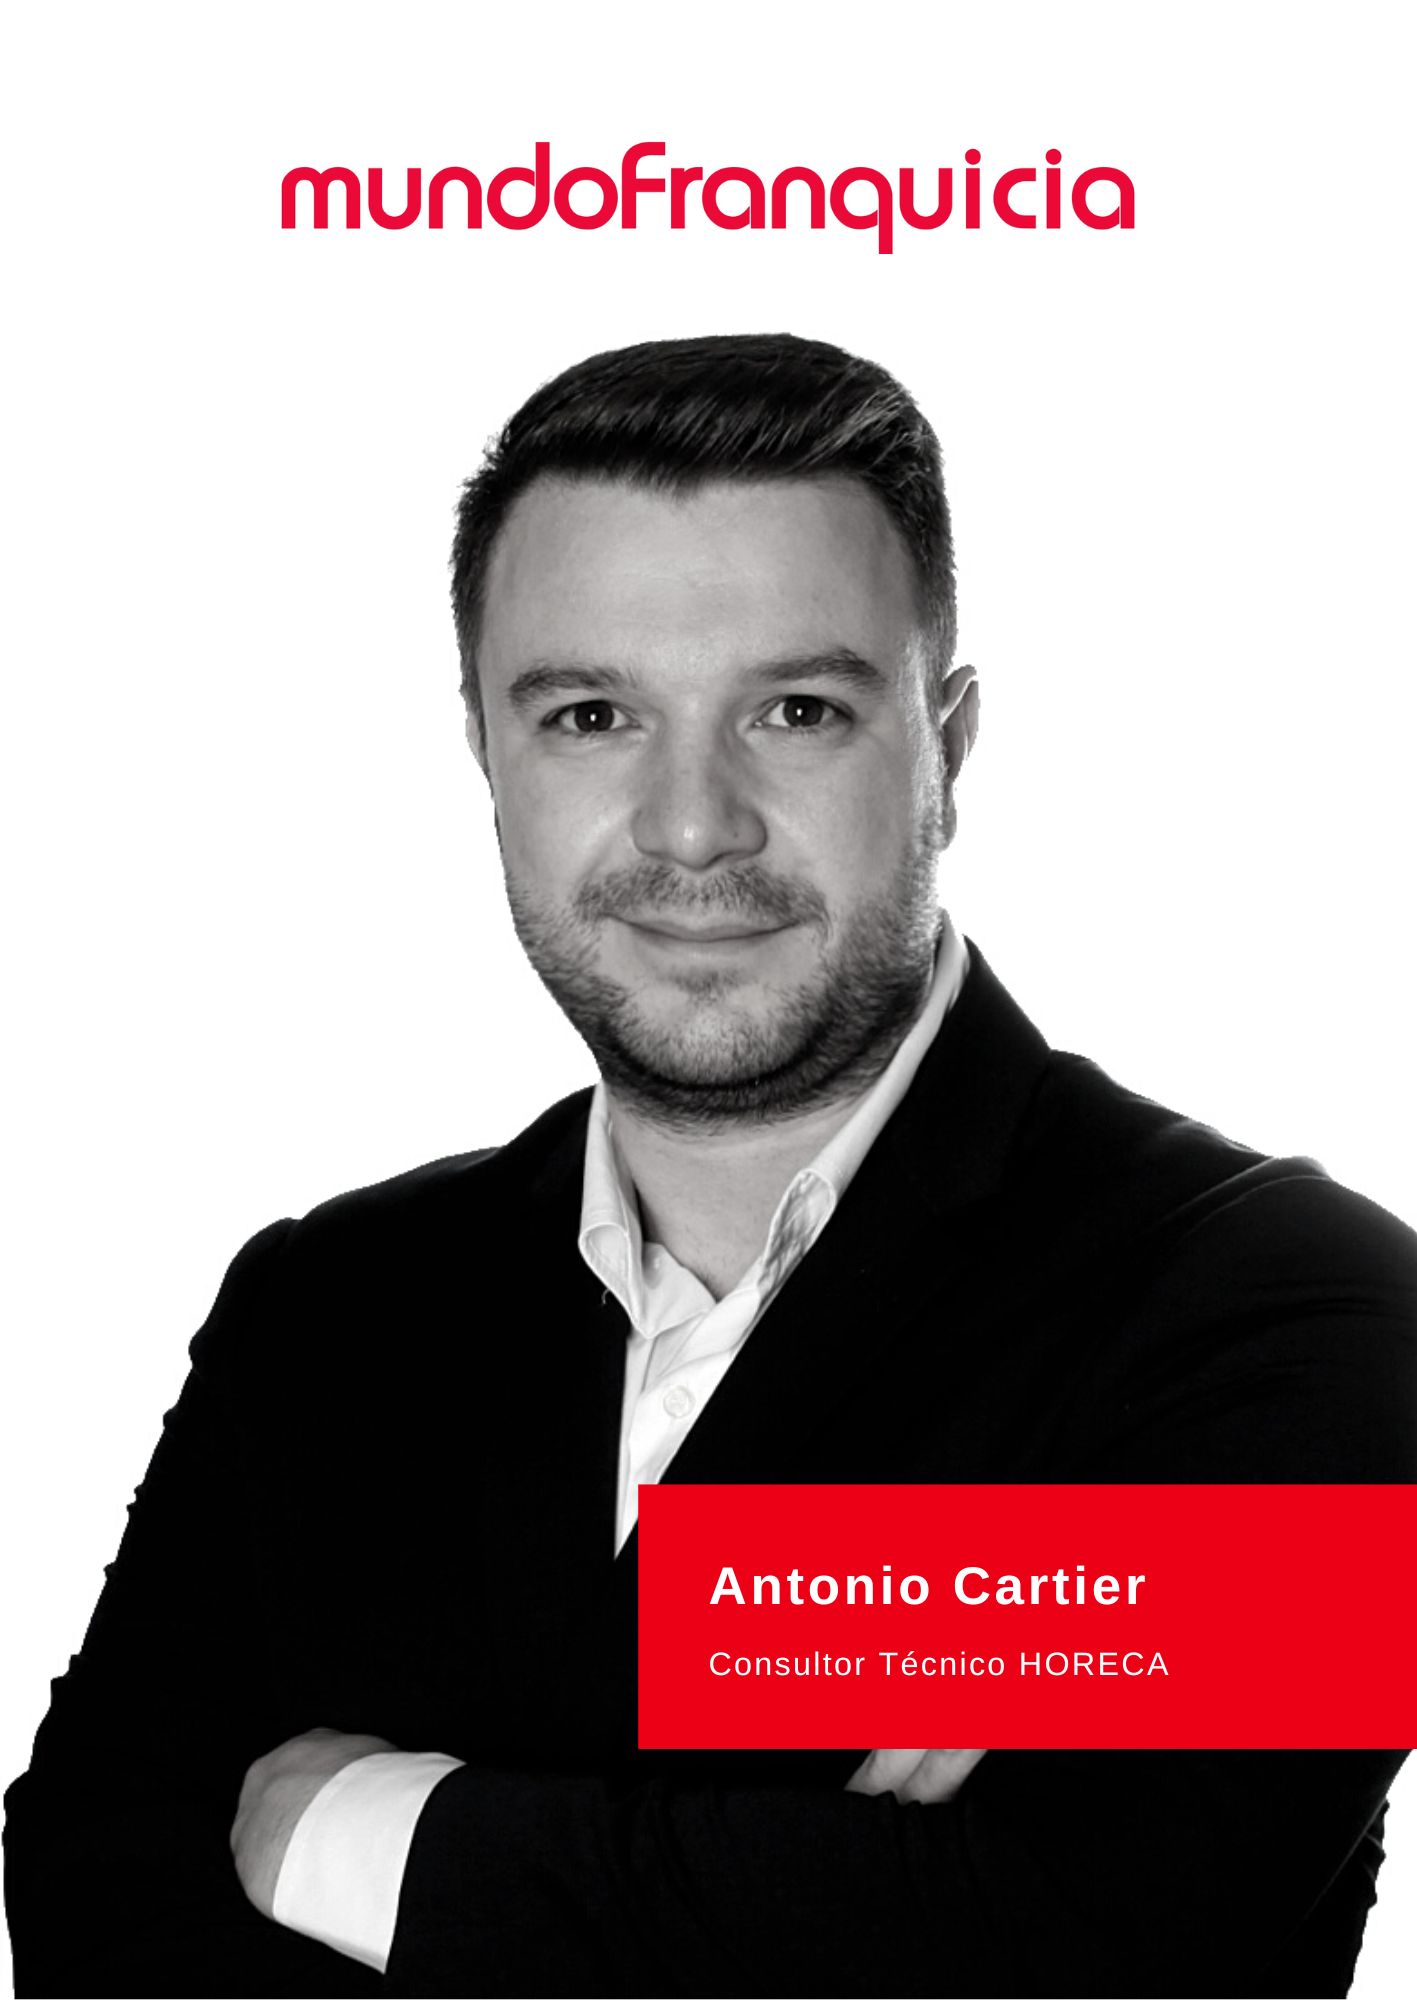 Antonio Cartier